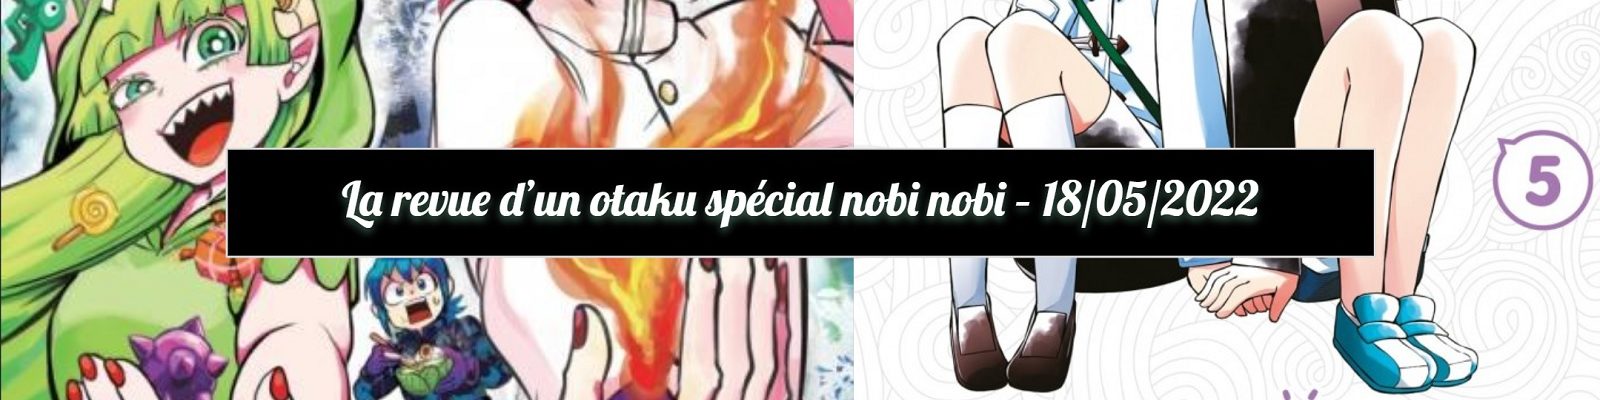 nobi nobi - Mon amie des ténèbres